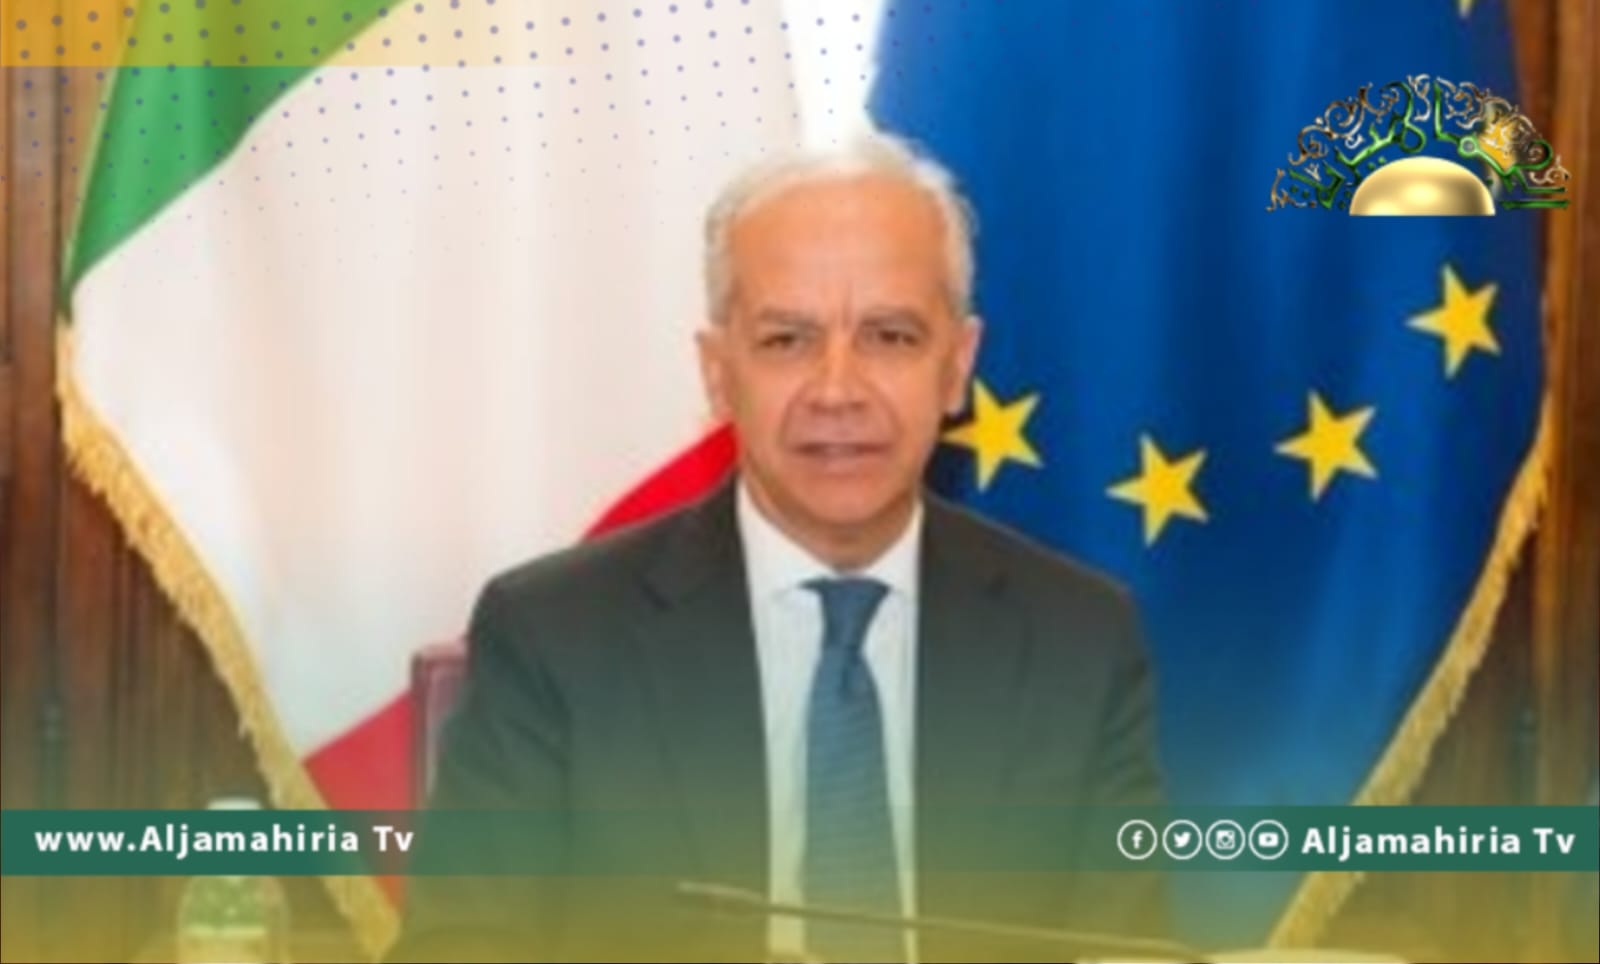 وزير الداخلية الإيطالي يعتزم زيارة تركيا لمناقشة الحد من الهجرة غير الشرعية